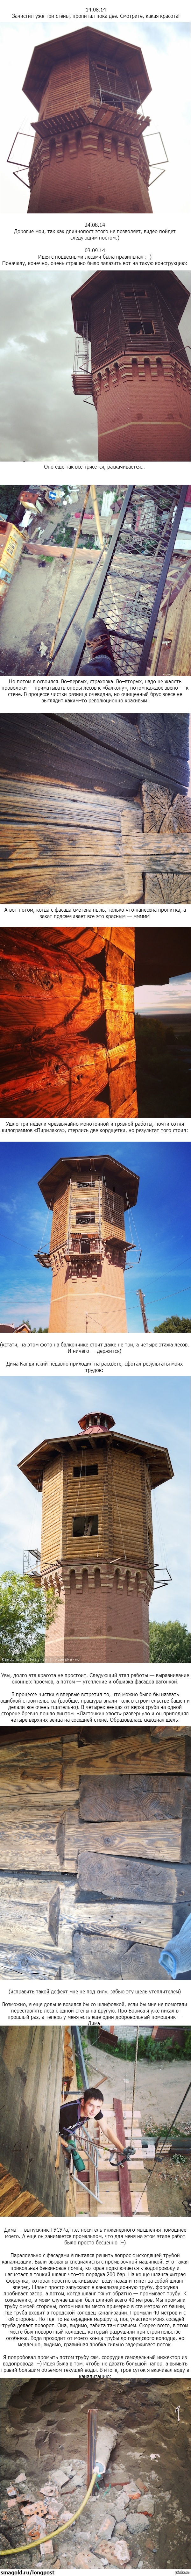 Башня Лунева Отчет №27. Продолжение в комментариях.